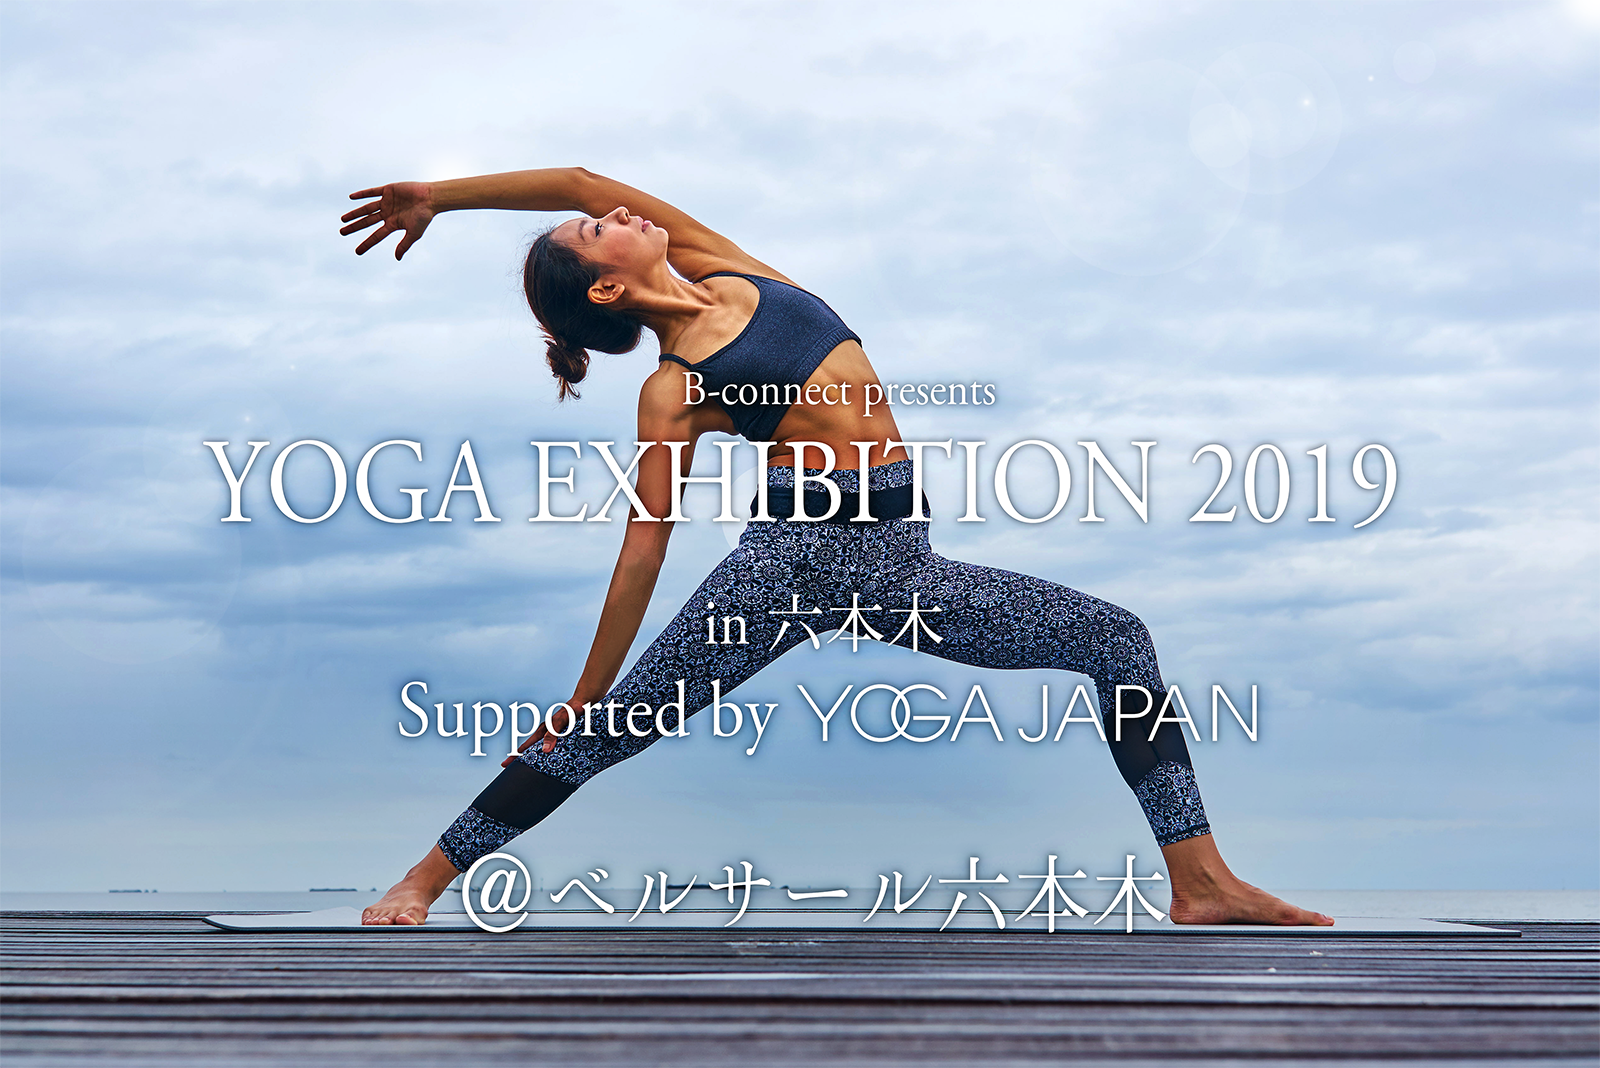 業界初 Yoga Exhibition を開催 ヨガ 関連 ウェルネス市場のビジネスマッチングフェア 参加インストラクターと出展社 タイムスケジュールを発表 Yoga Japan 実行委員会のプレスリリース